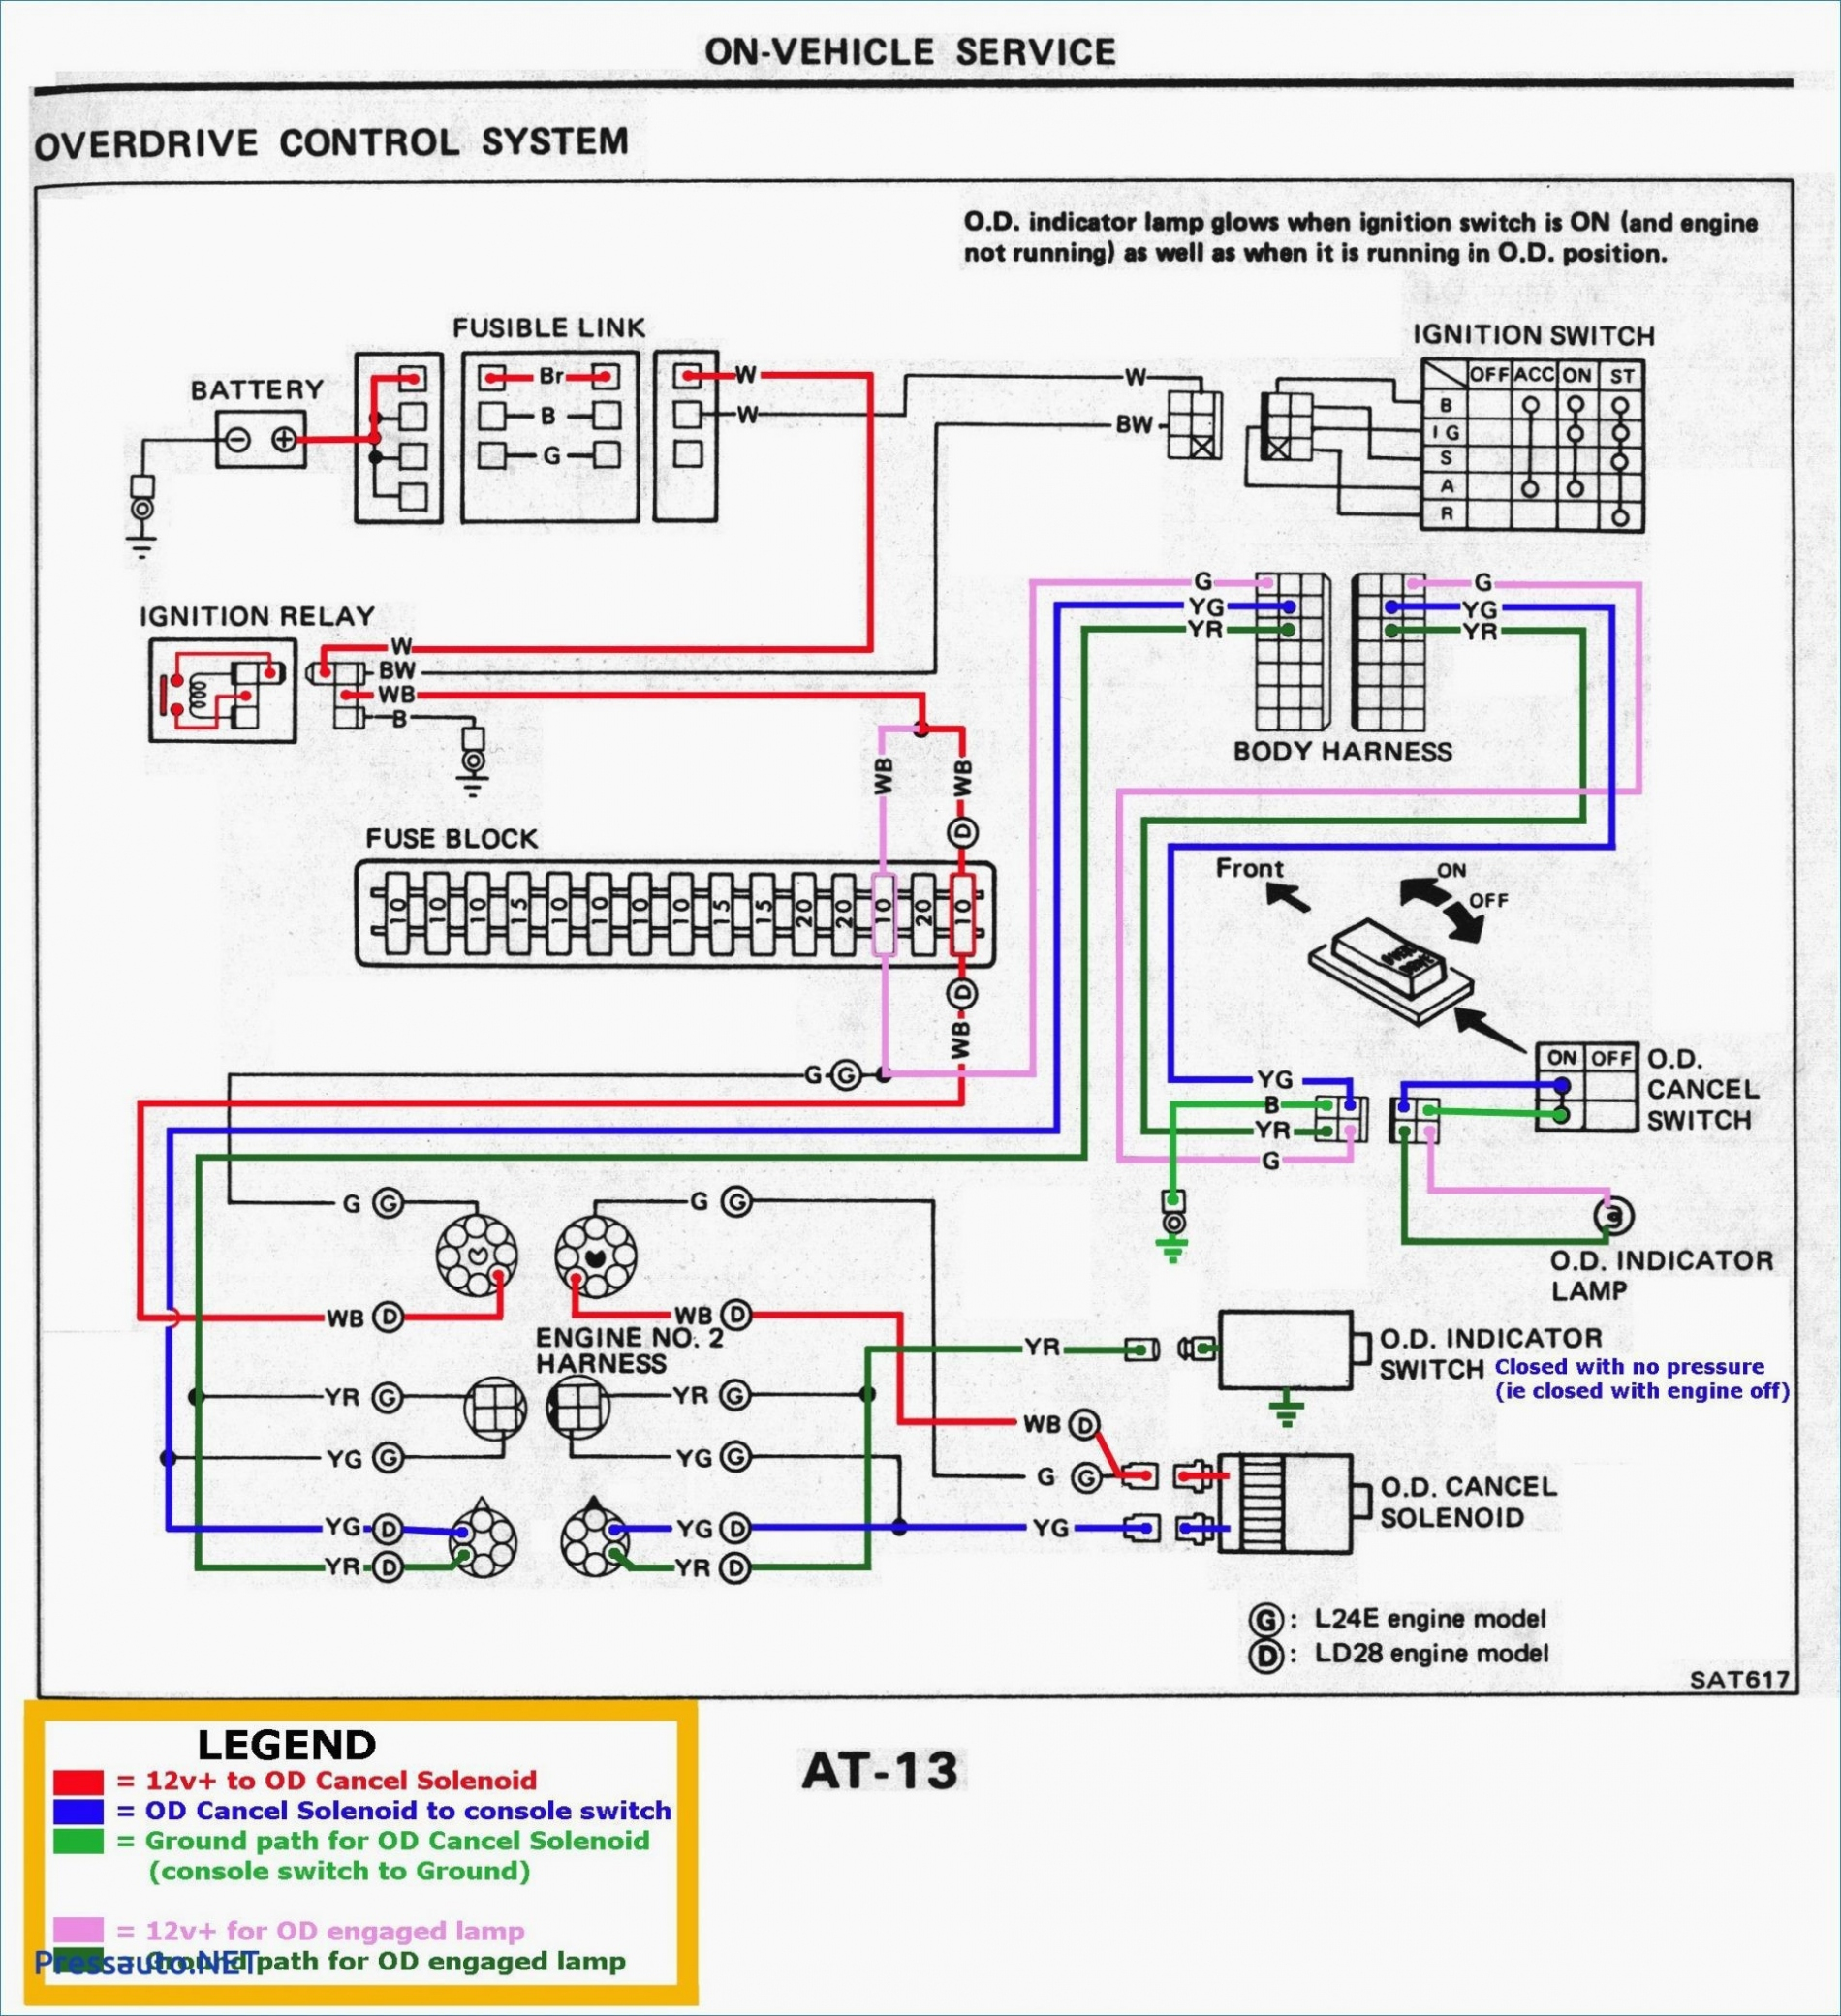 Keystone Trailer Wiring Diagram | Wiring Diagram - Keystone Trailer Wiring Diagram